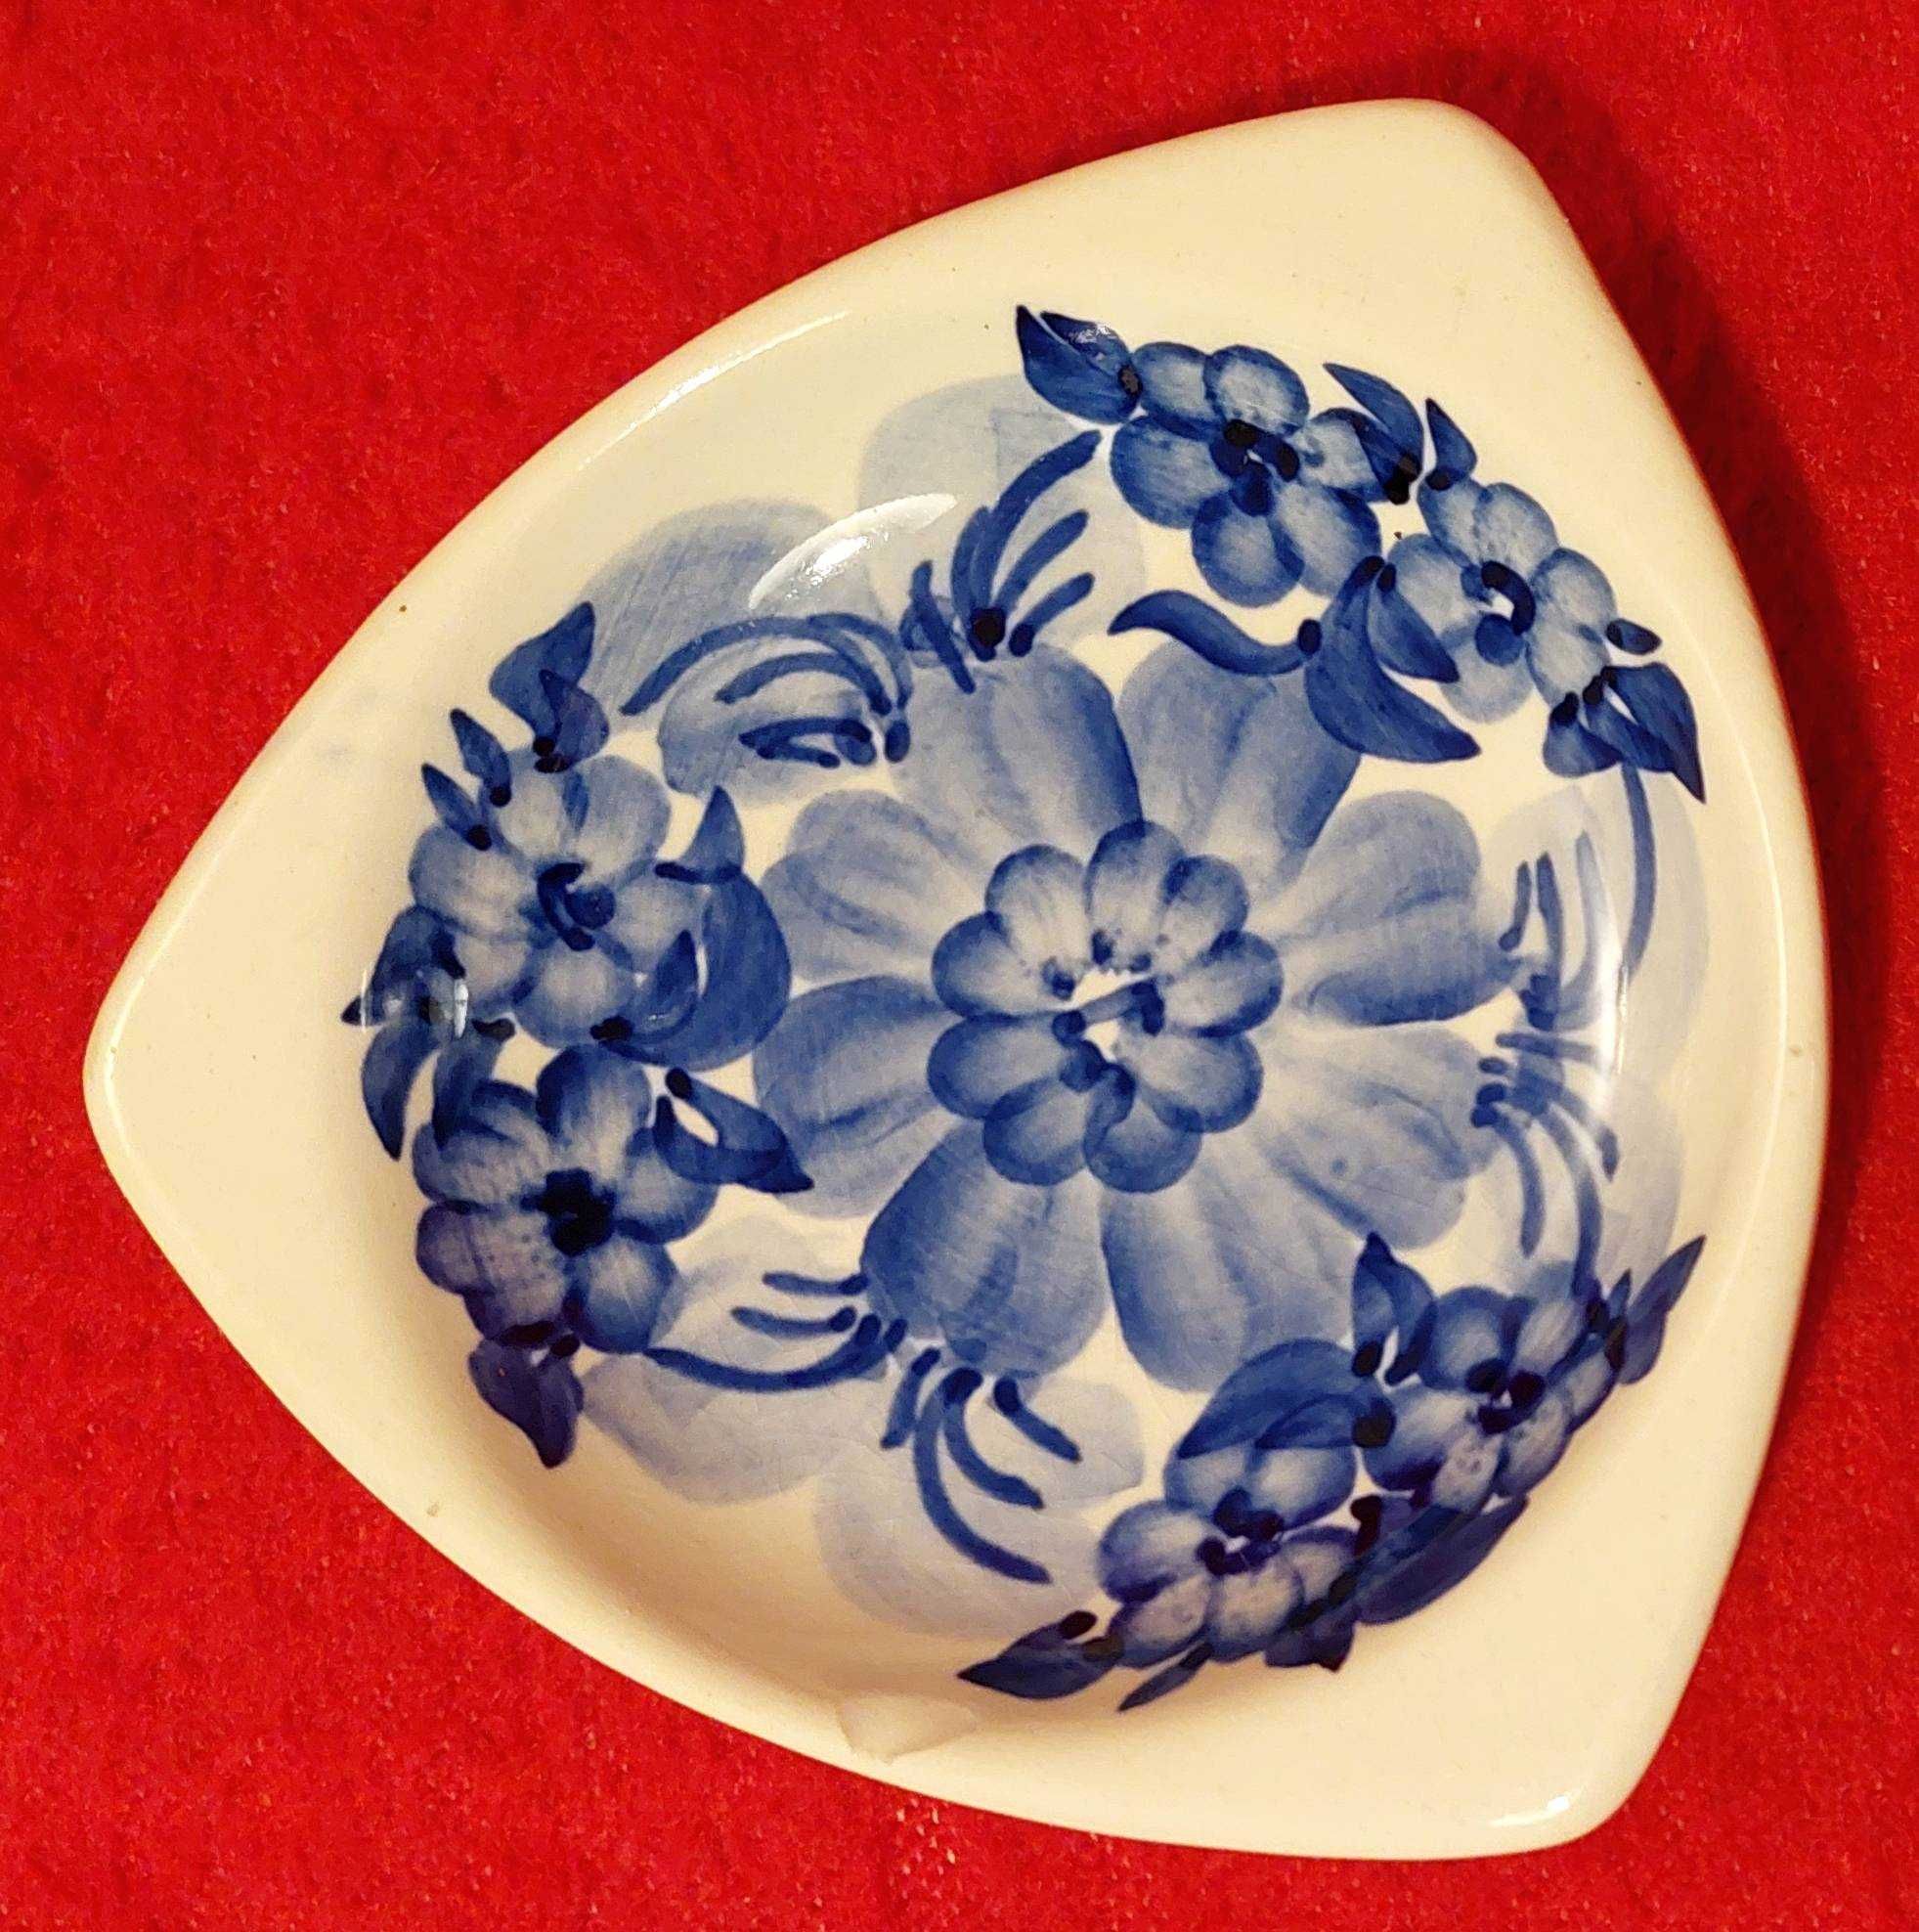 Stara popielniczka ceramiczna w stylu "Włocławek"